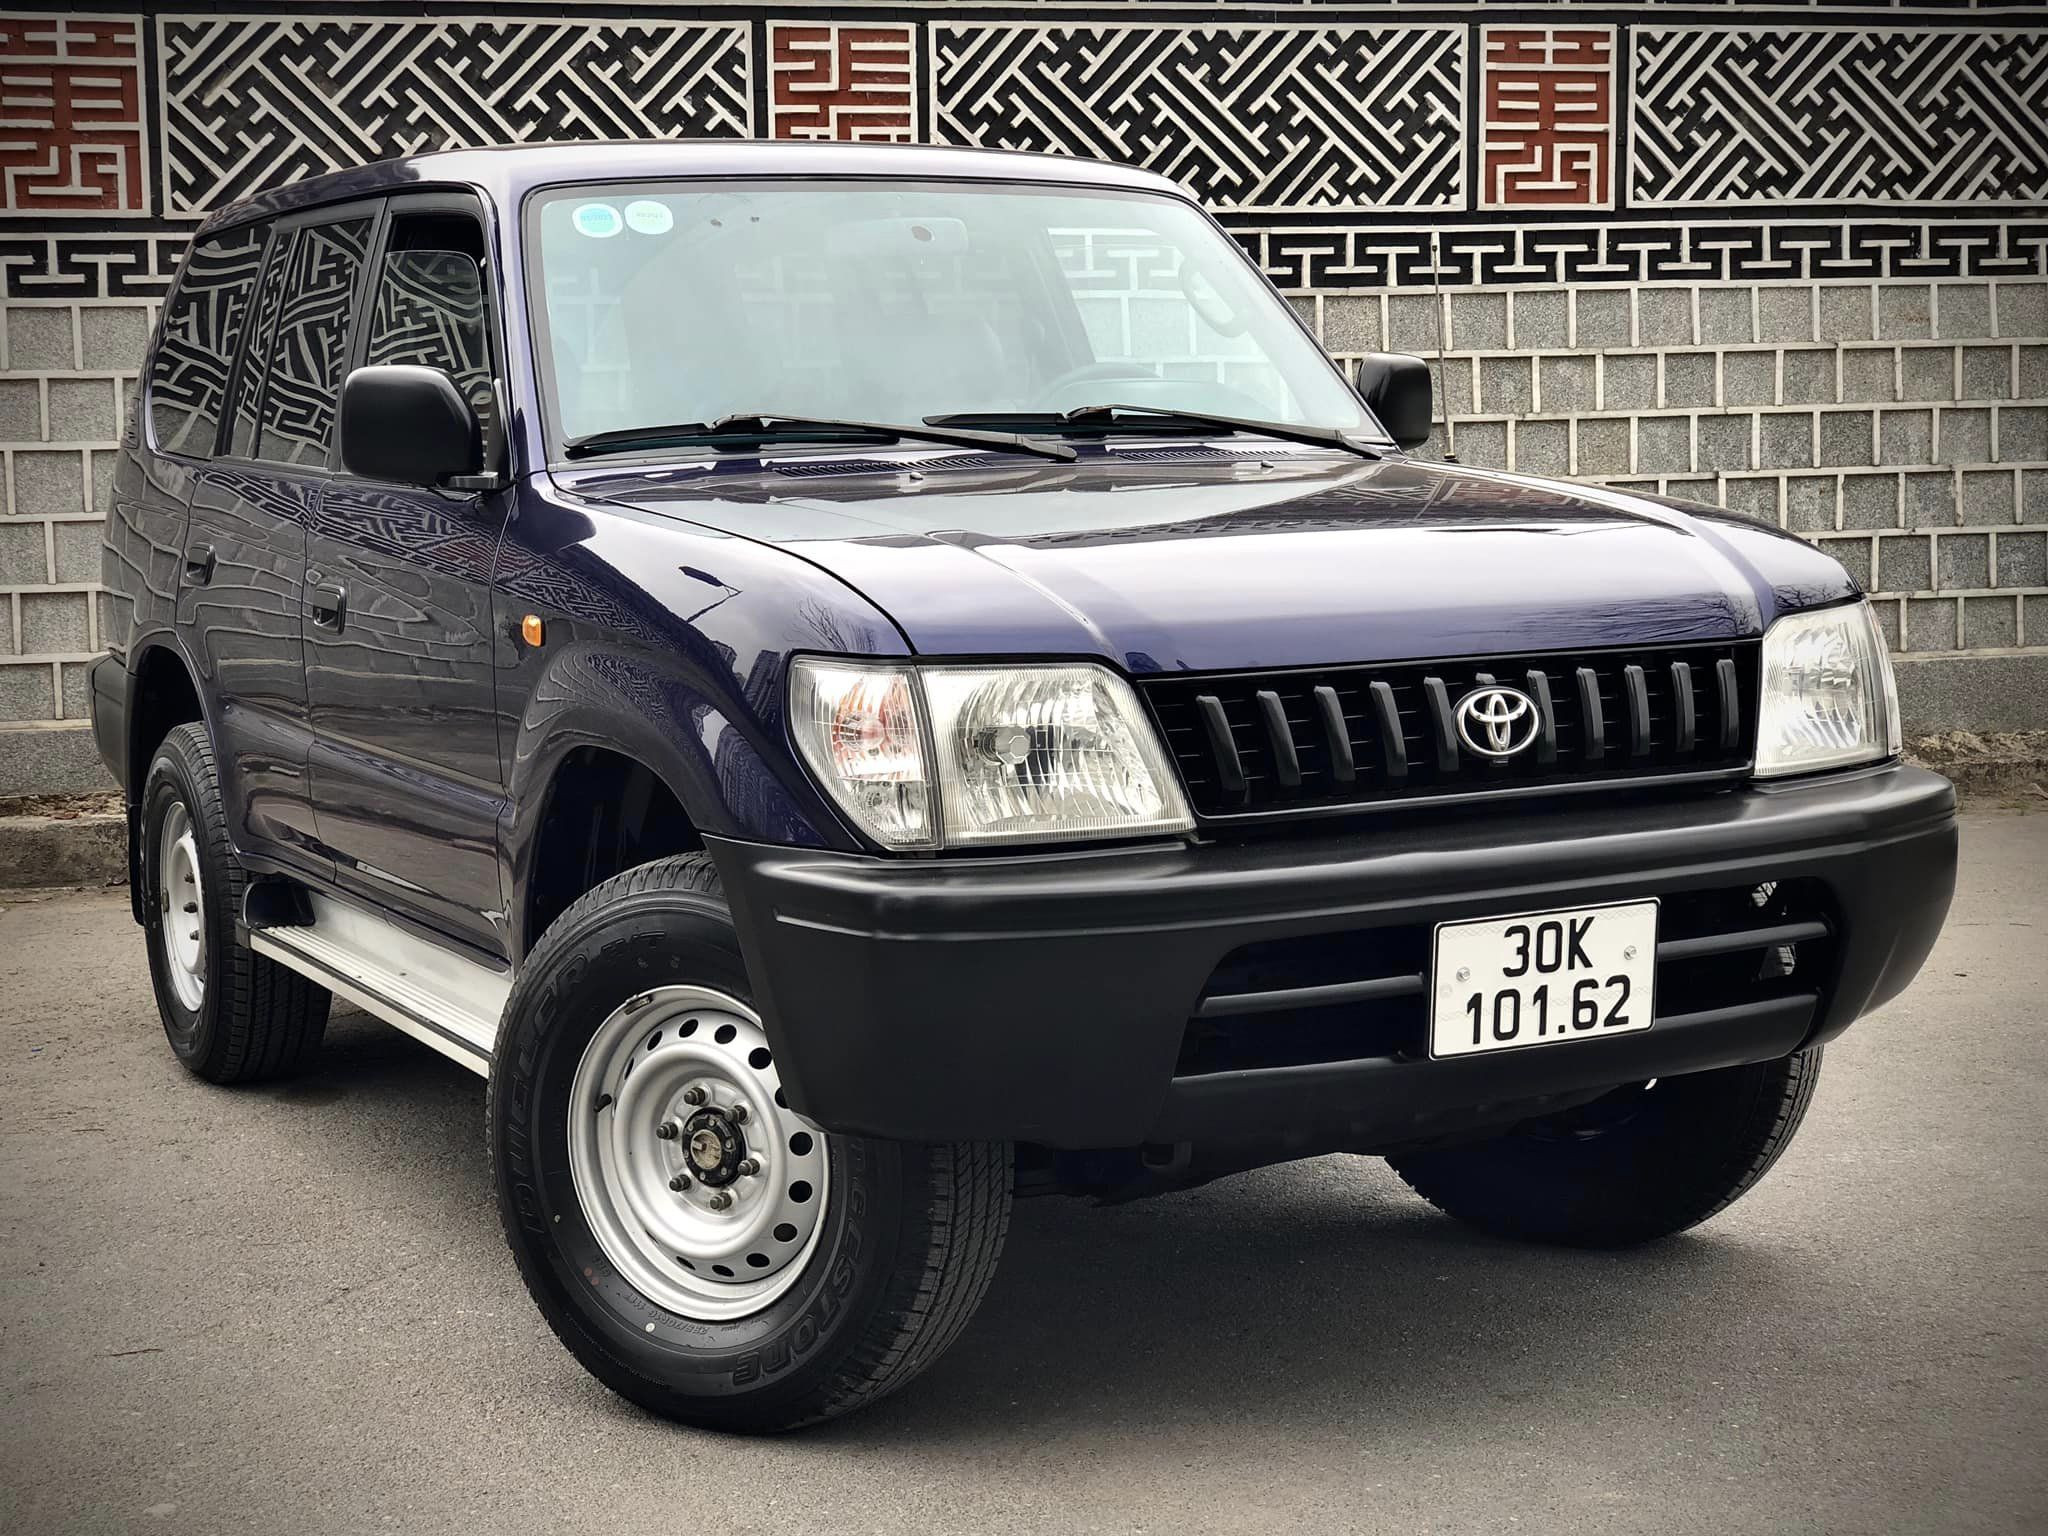 Xế 'độc' Toyota Prado 1997 máy dầu nguyên bản được rao bán 750 triệu đồng